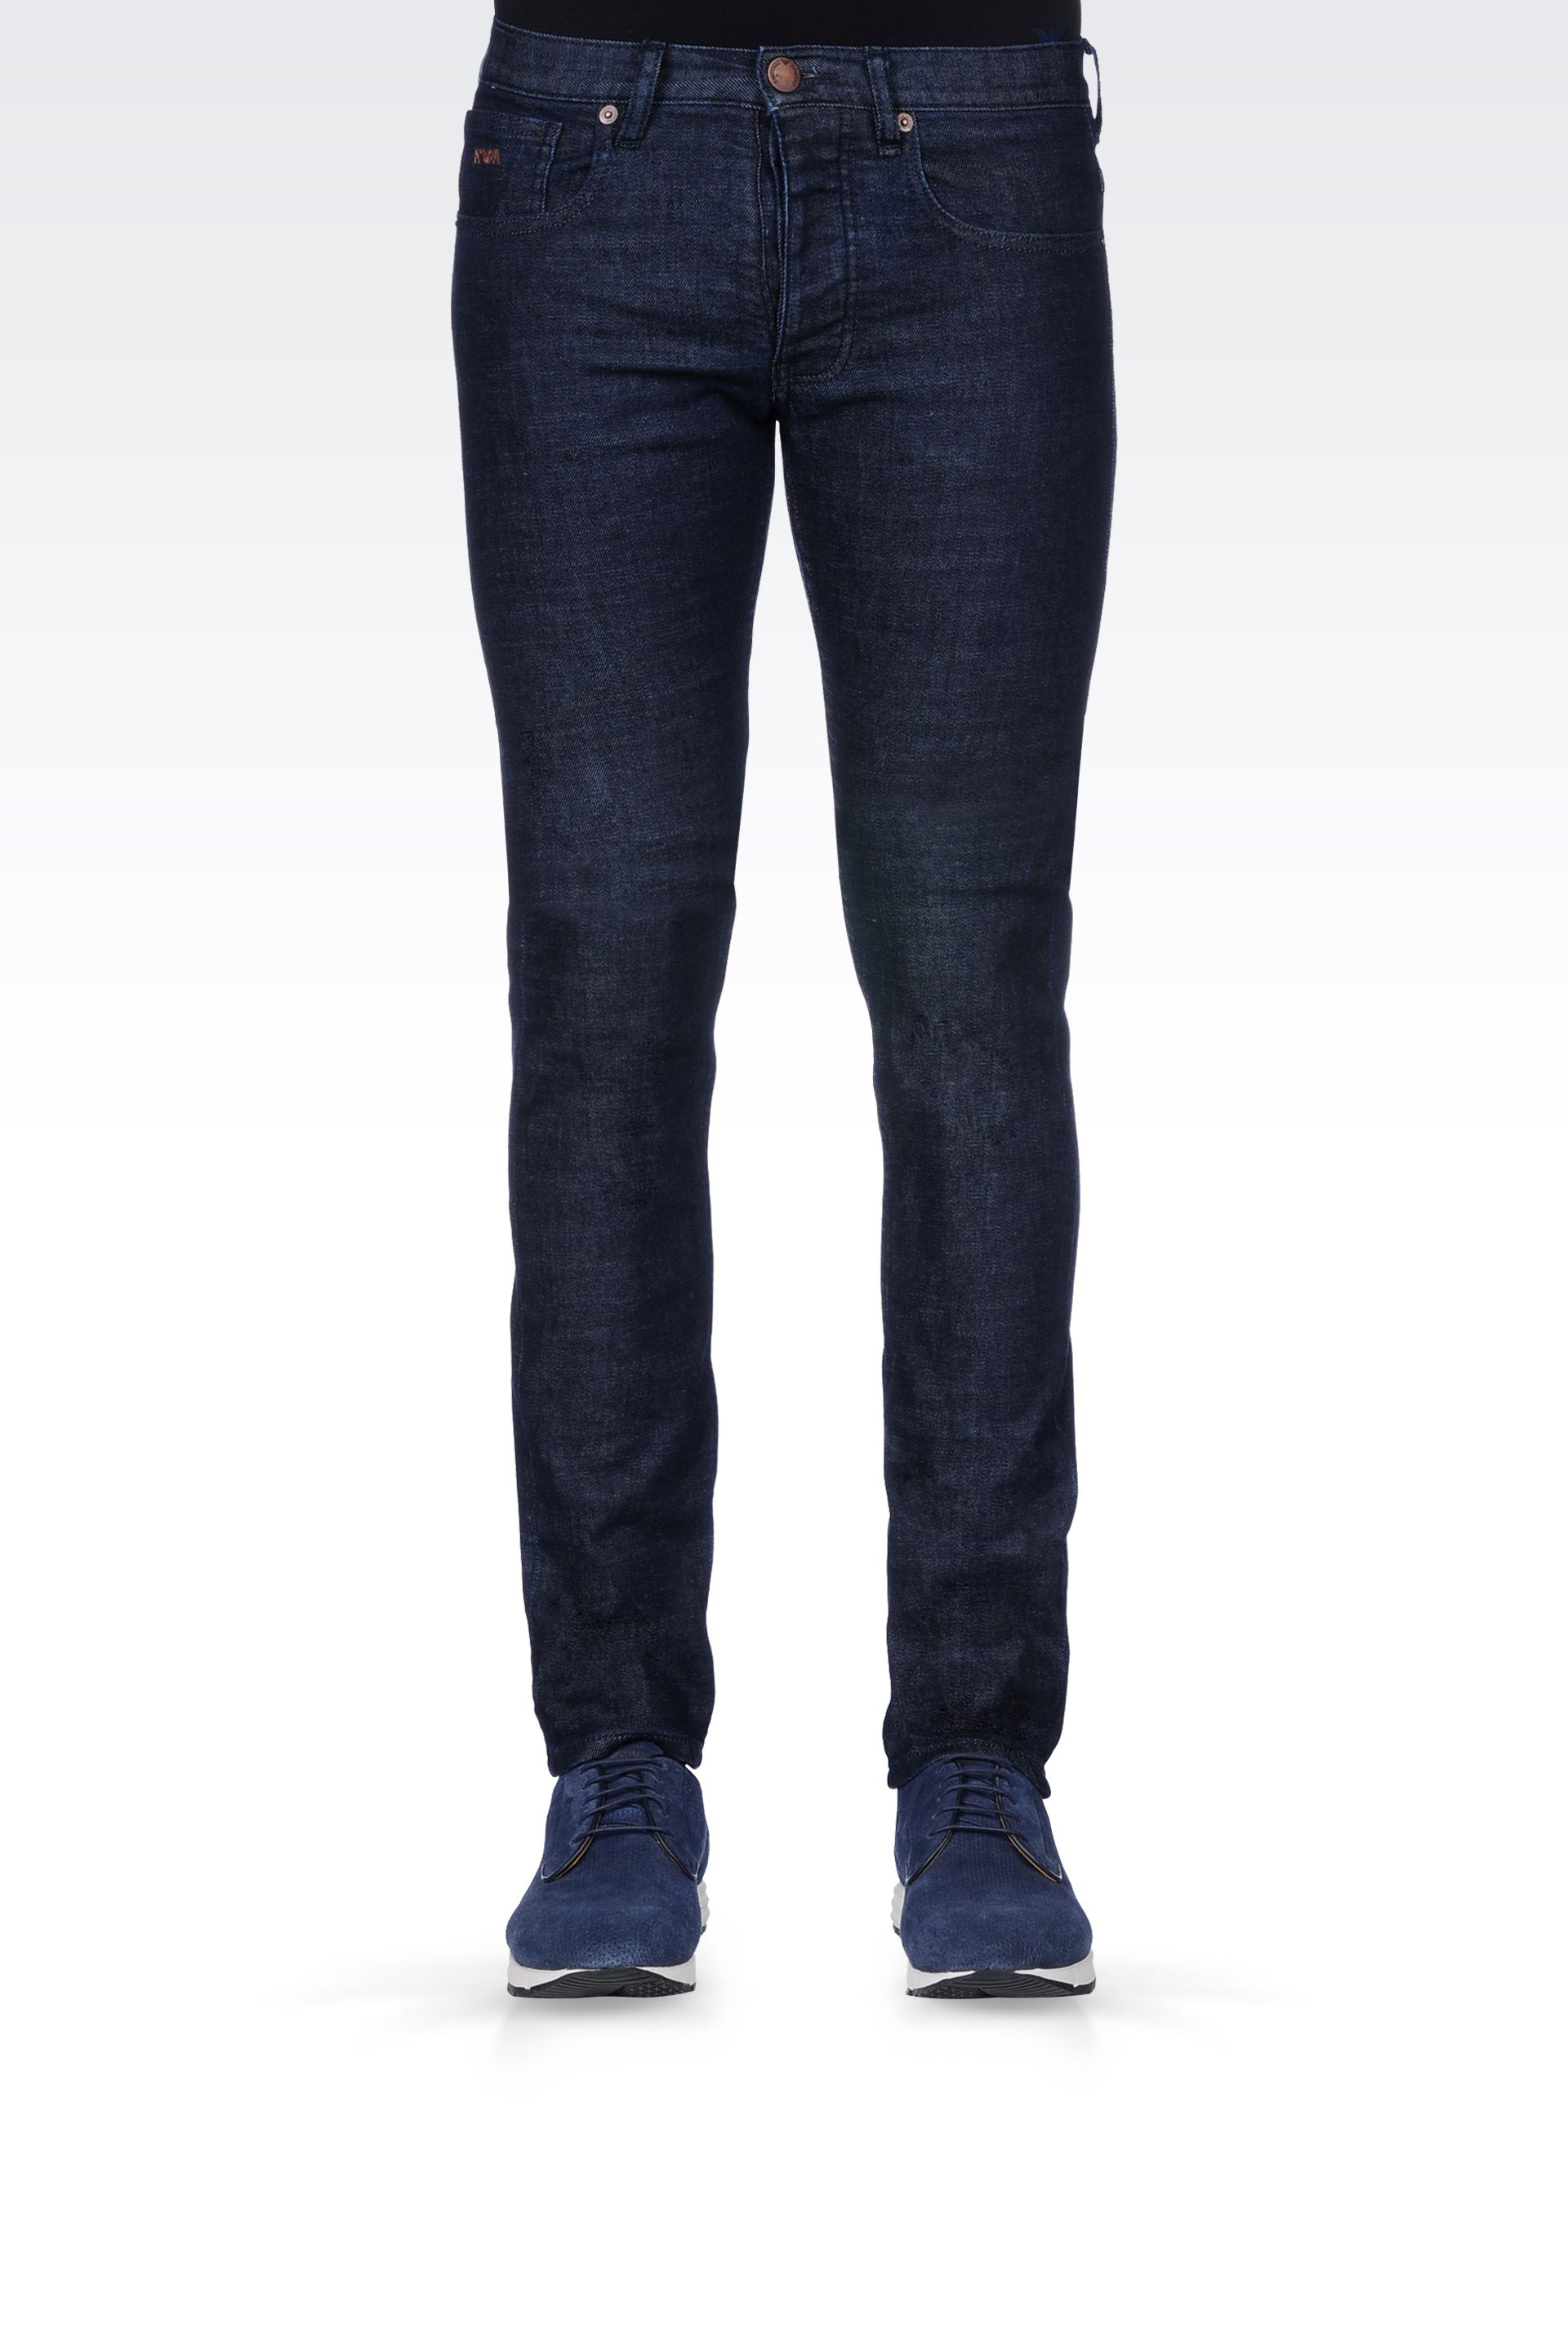 Forstå Fritid elevation Emporio Armani Slim Fit Dark Wash Jeans in Blue for Men - Lyst